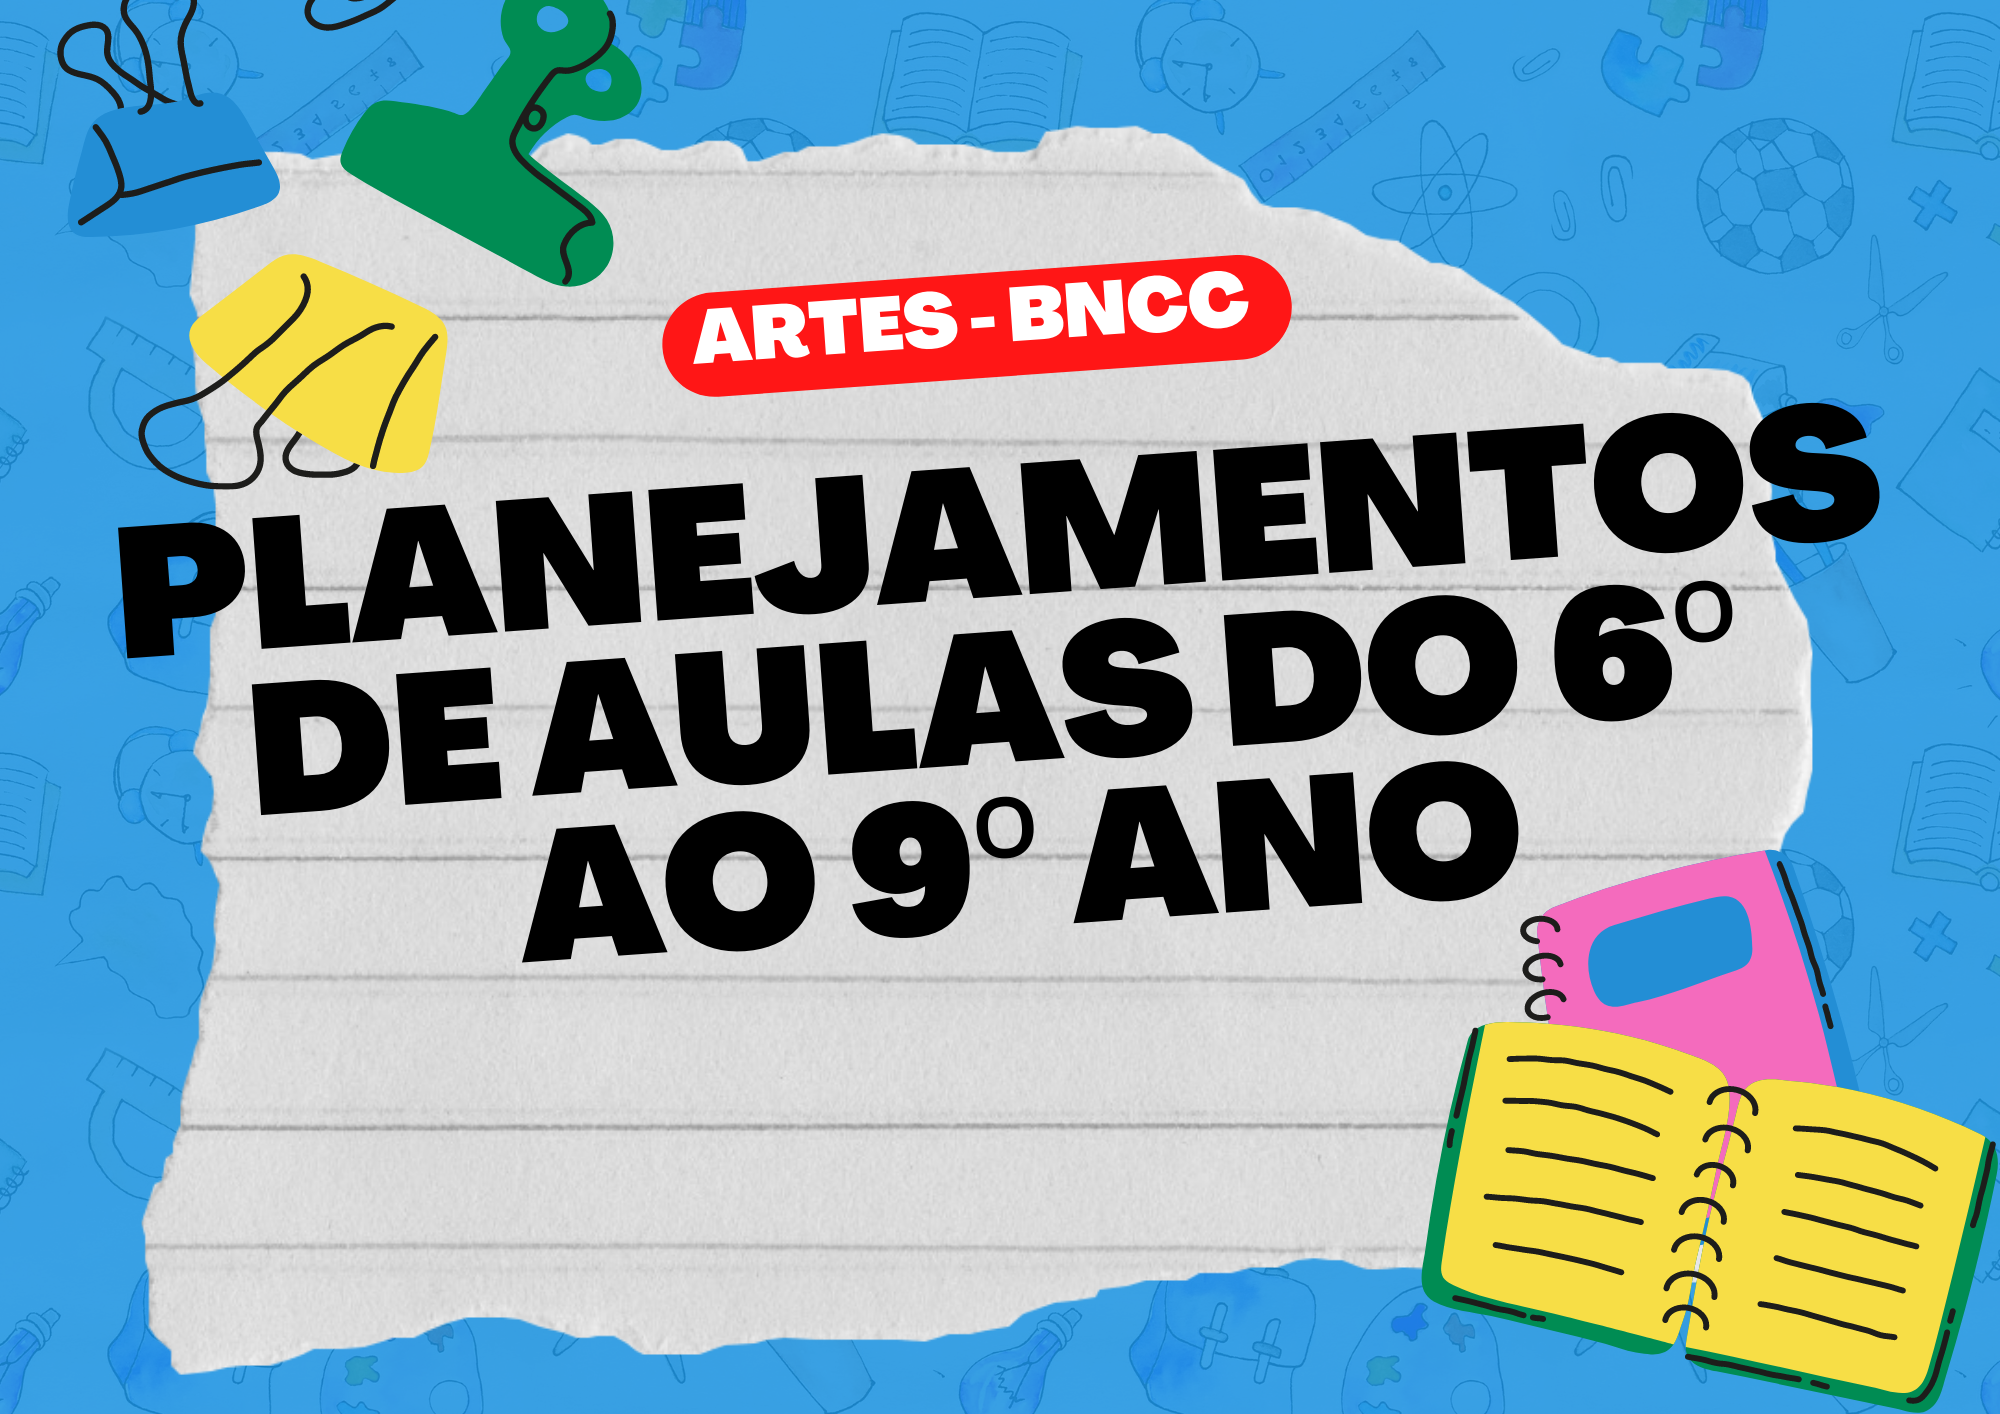 Planejamentos de aulas do 6º ao 9º ano Artes - BNCC.